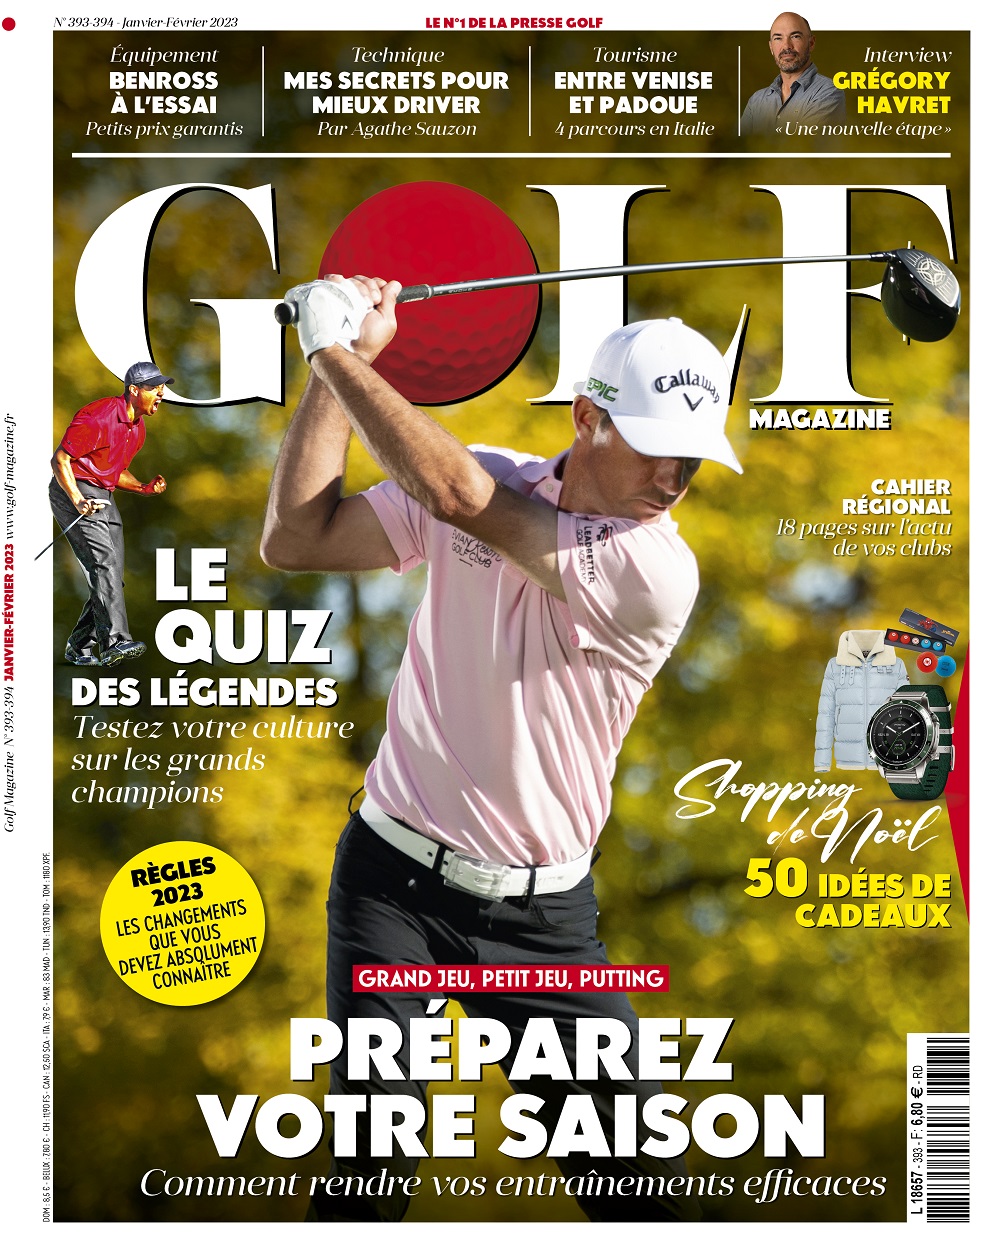 Le Golf Magazine n°393-394 est en kiosque !